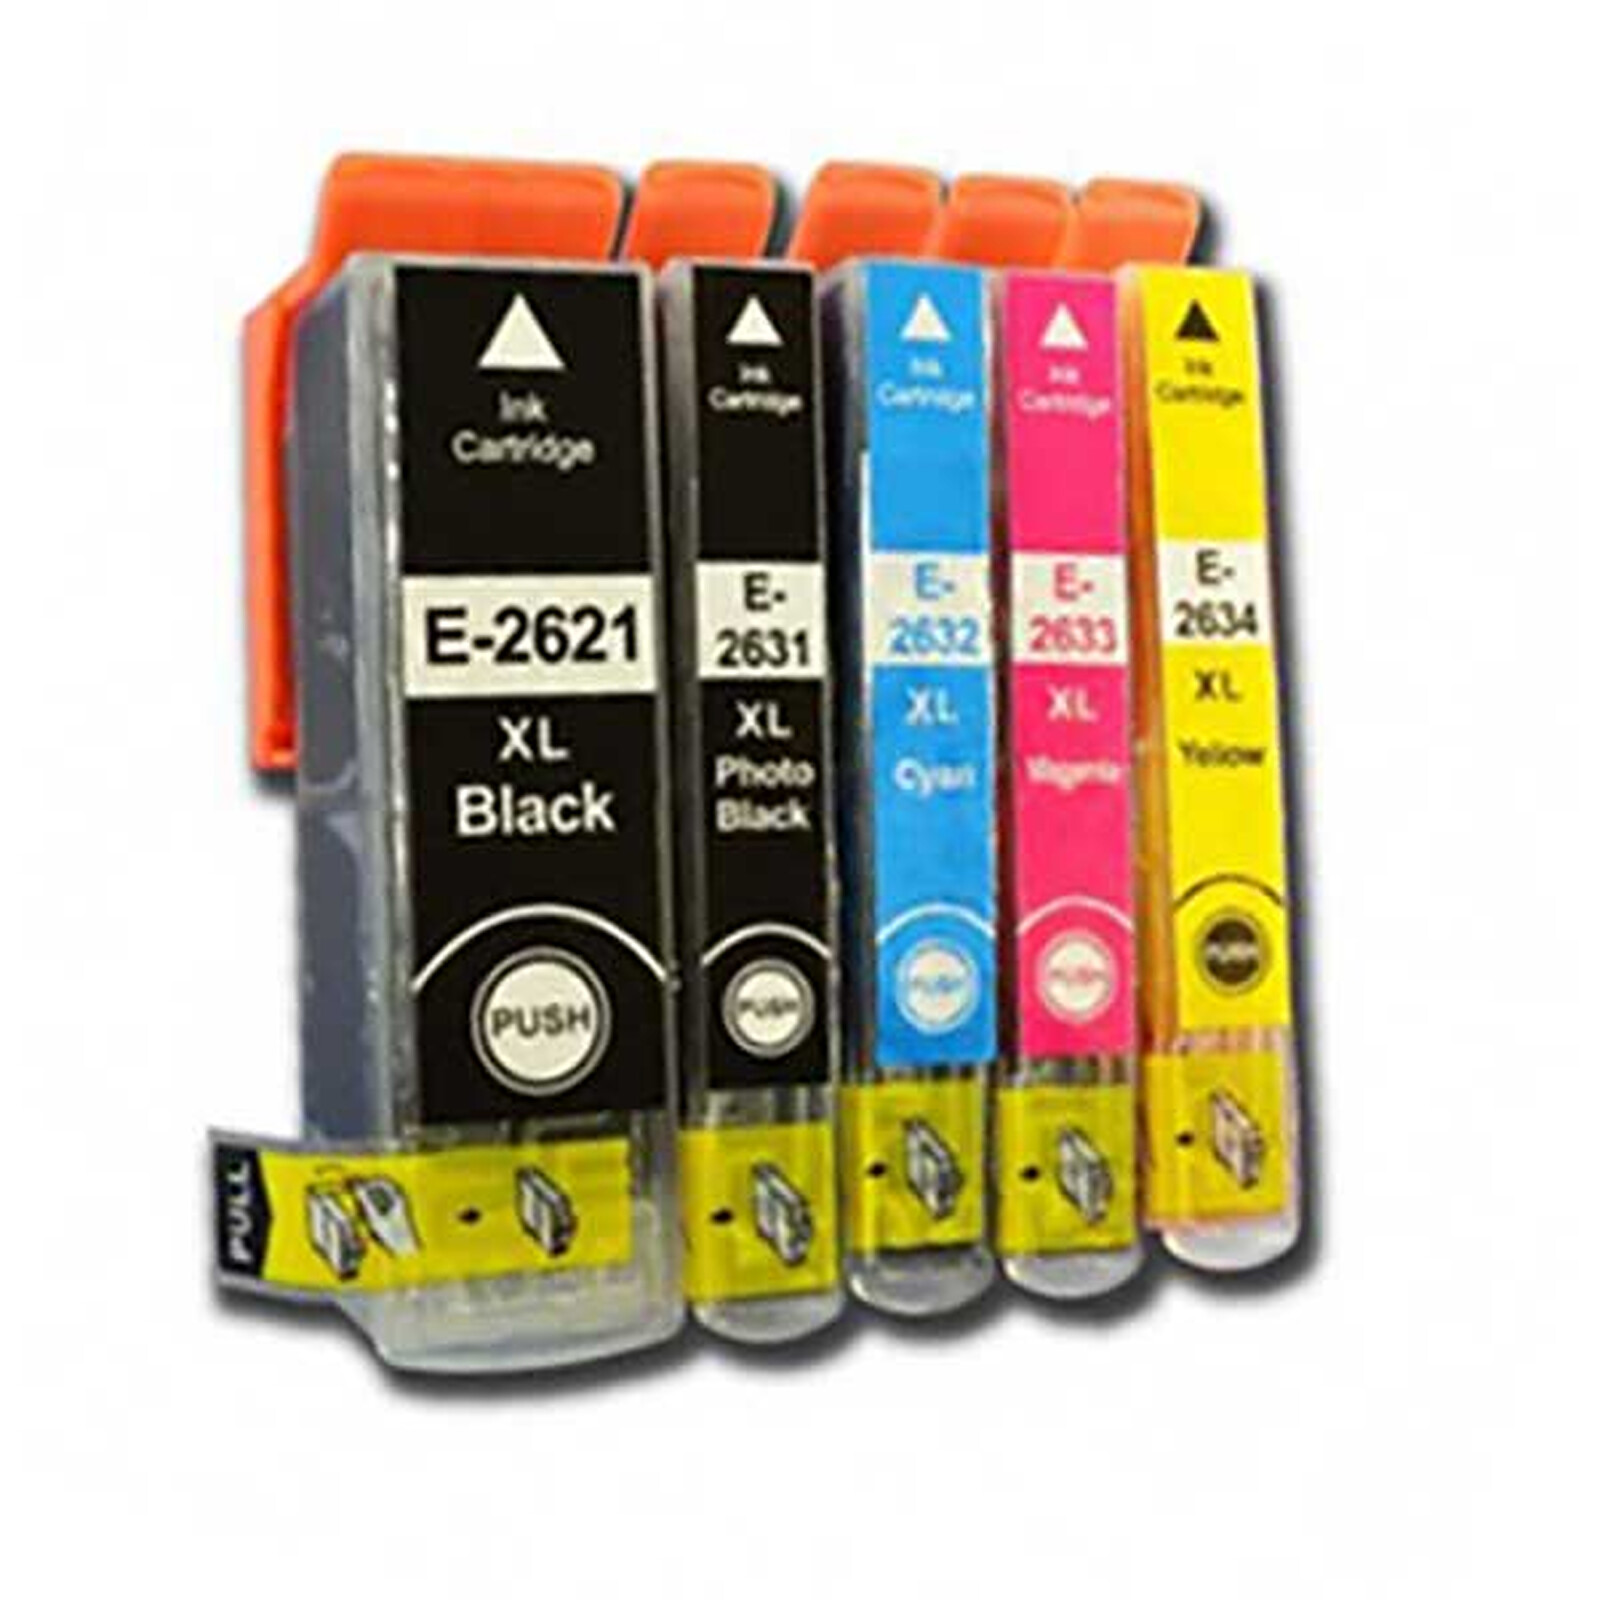 Epson 603XL Pack cartouches d'encre compatibles - Premium Solution